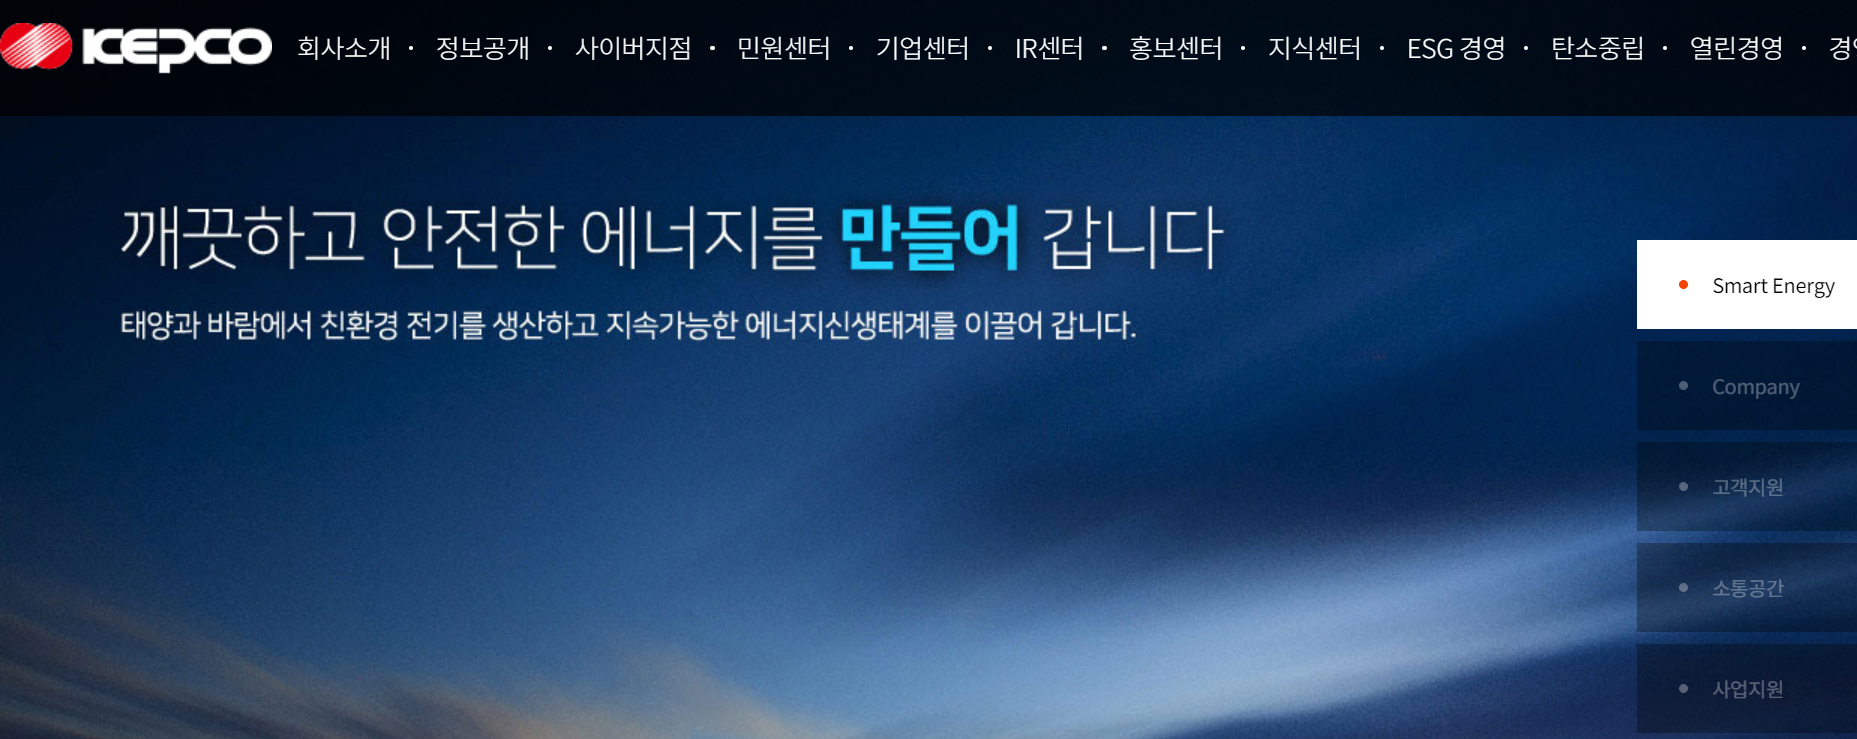 한국전력공사 홈페이지 메인화면